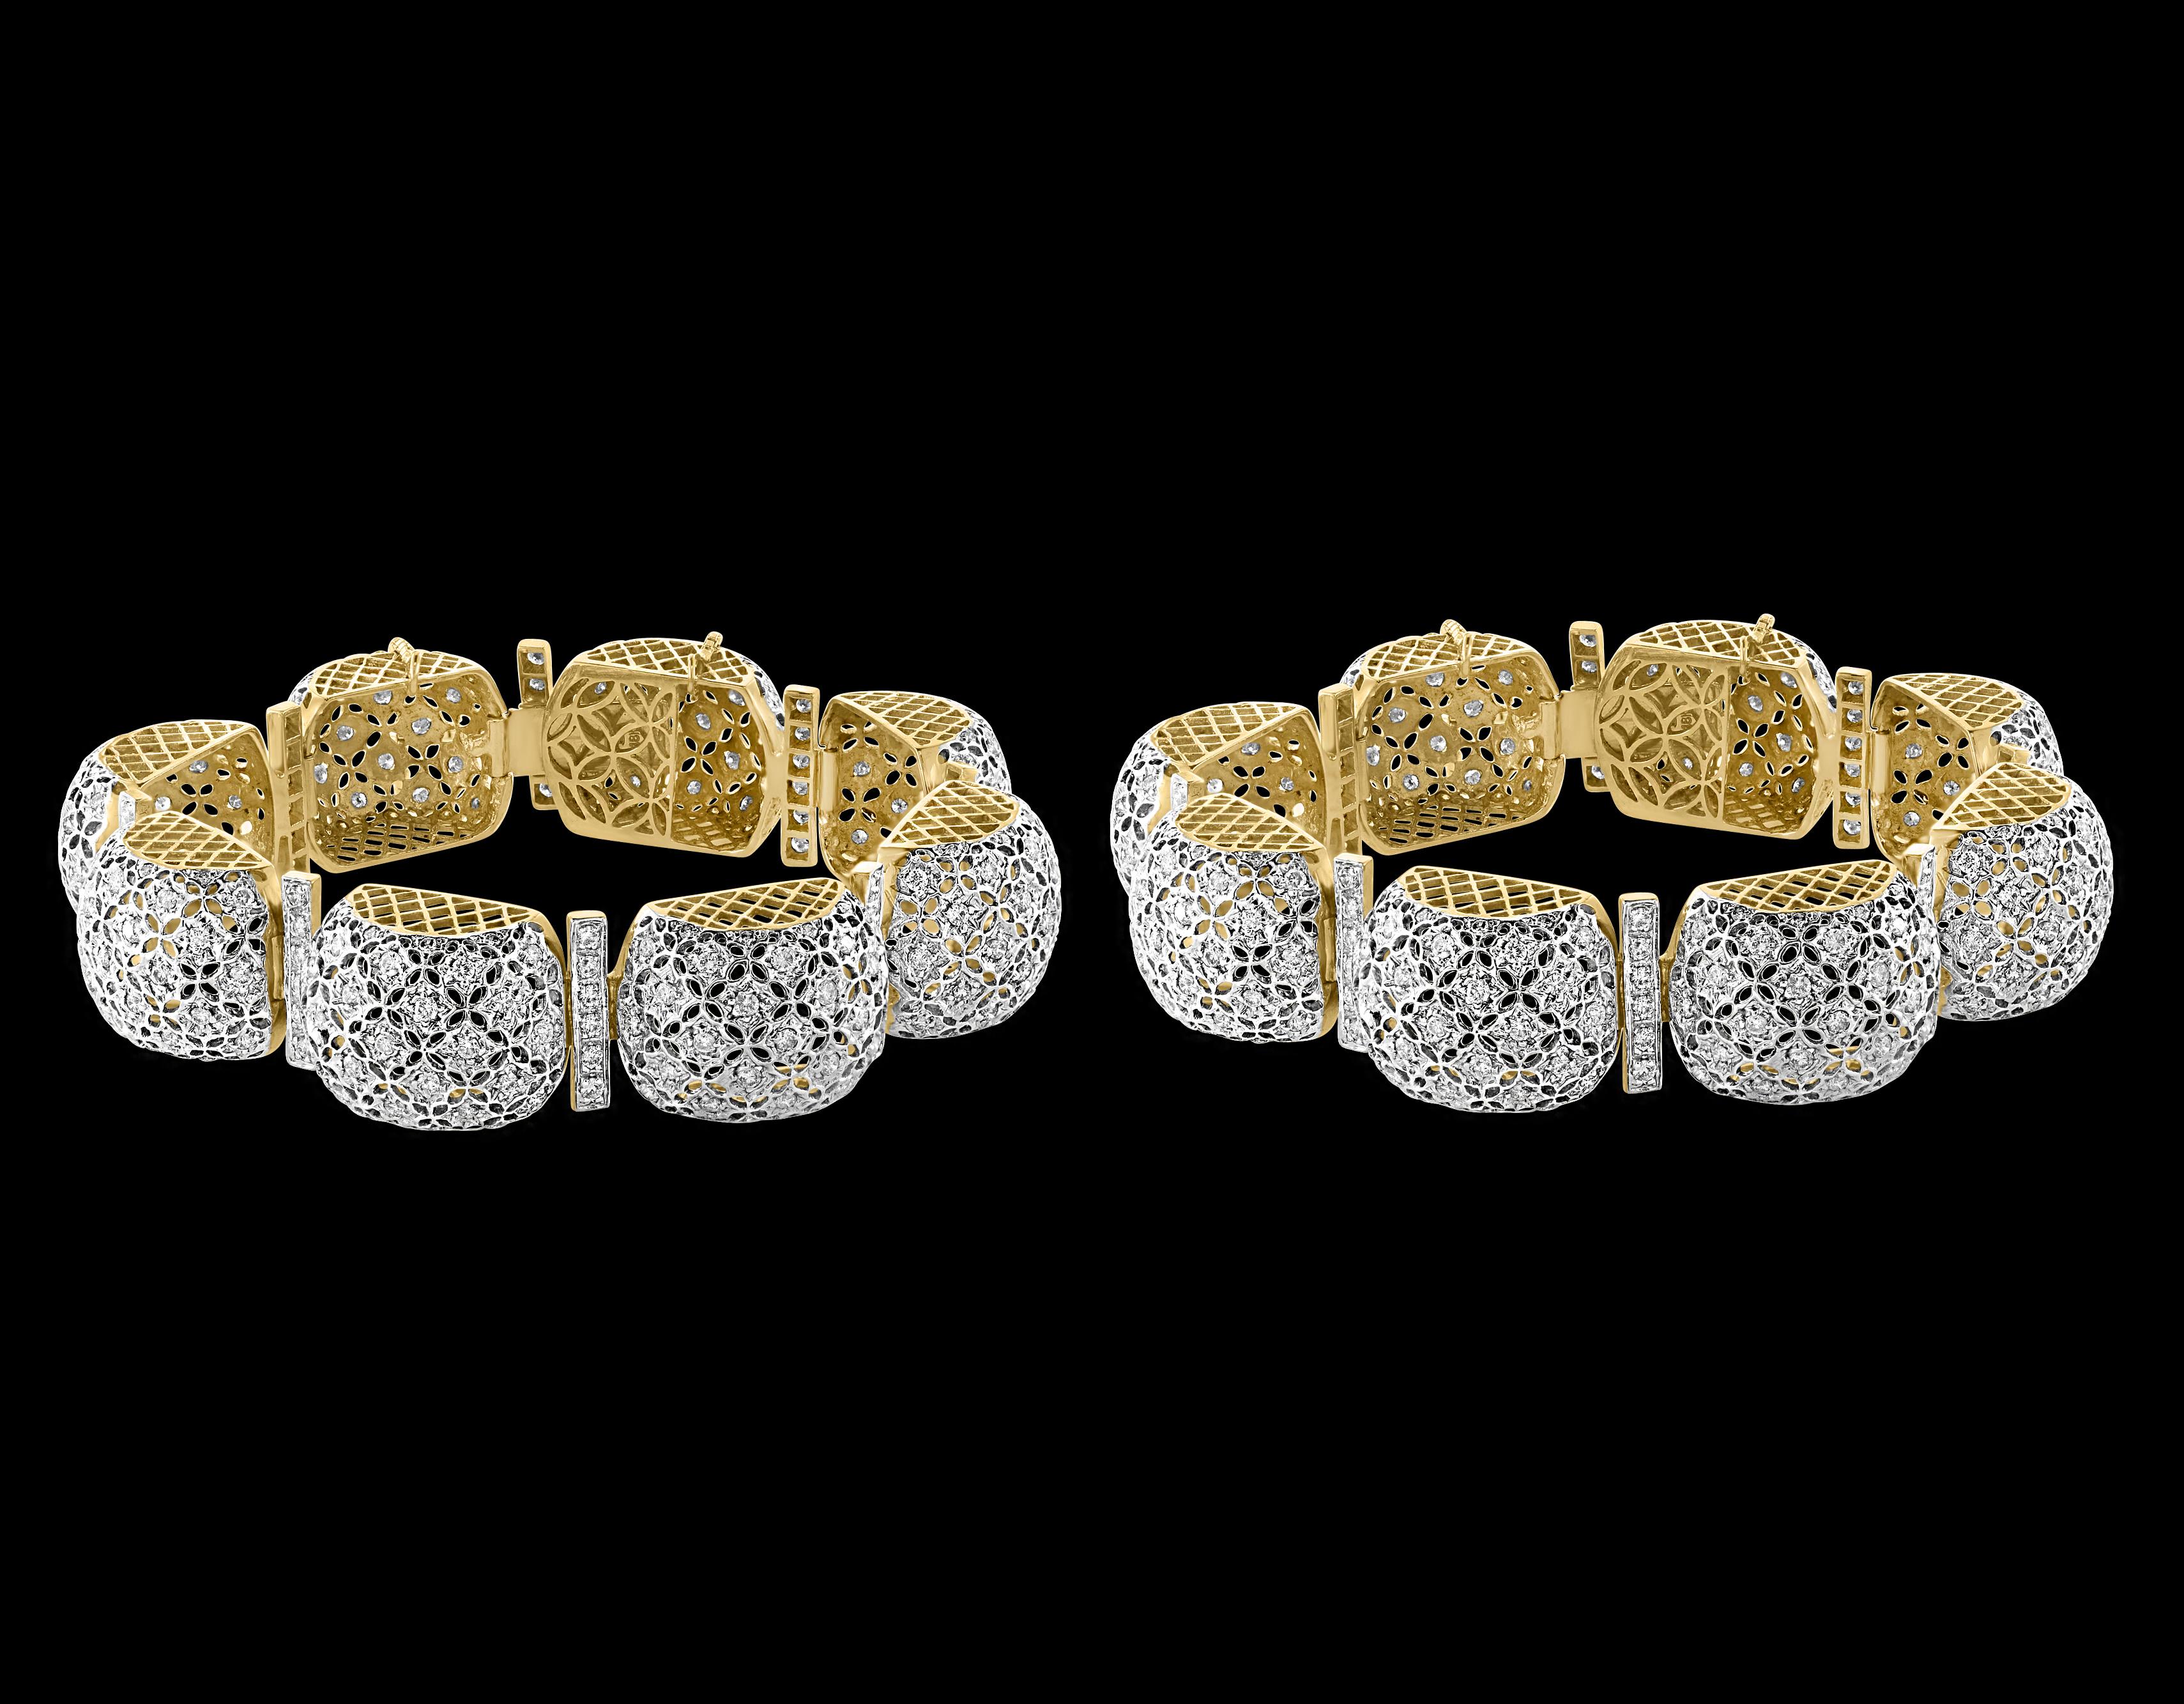 Round Cut Mugul Style 18 Karat Yellow Gold and Diamonds Pair of Bangle / Bracelet